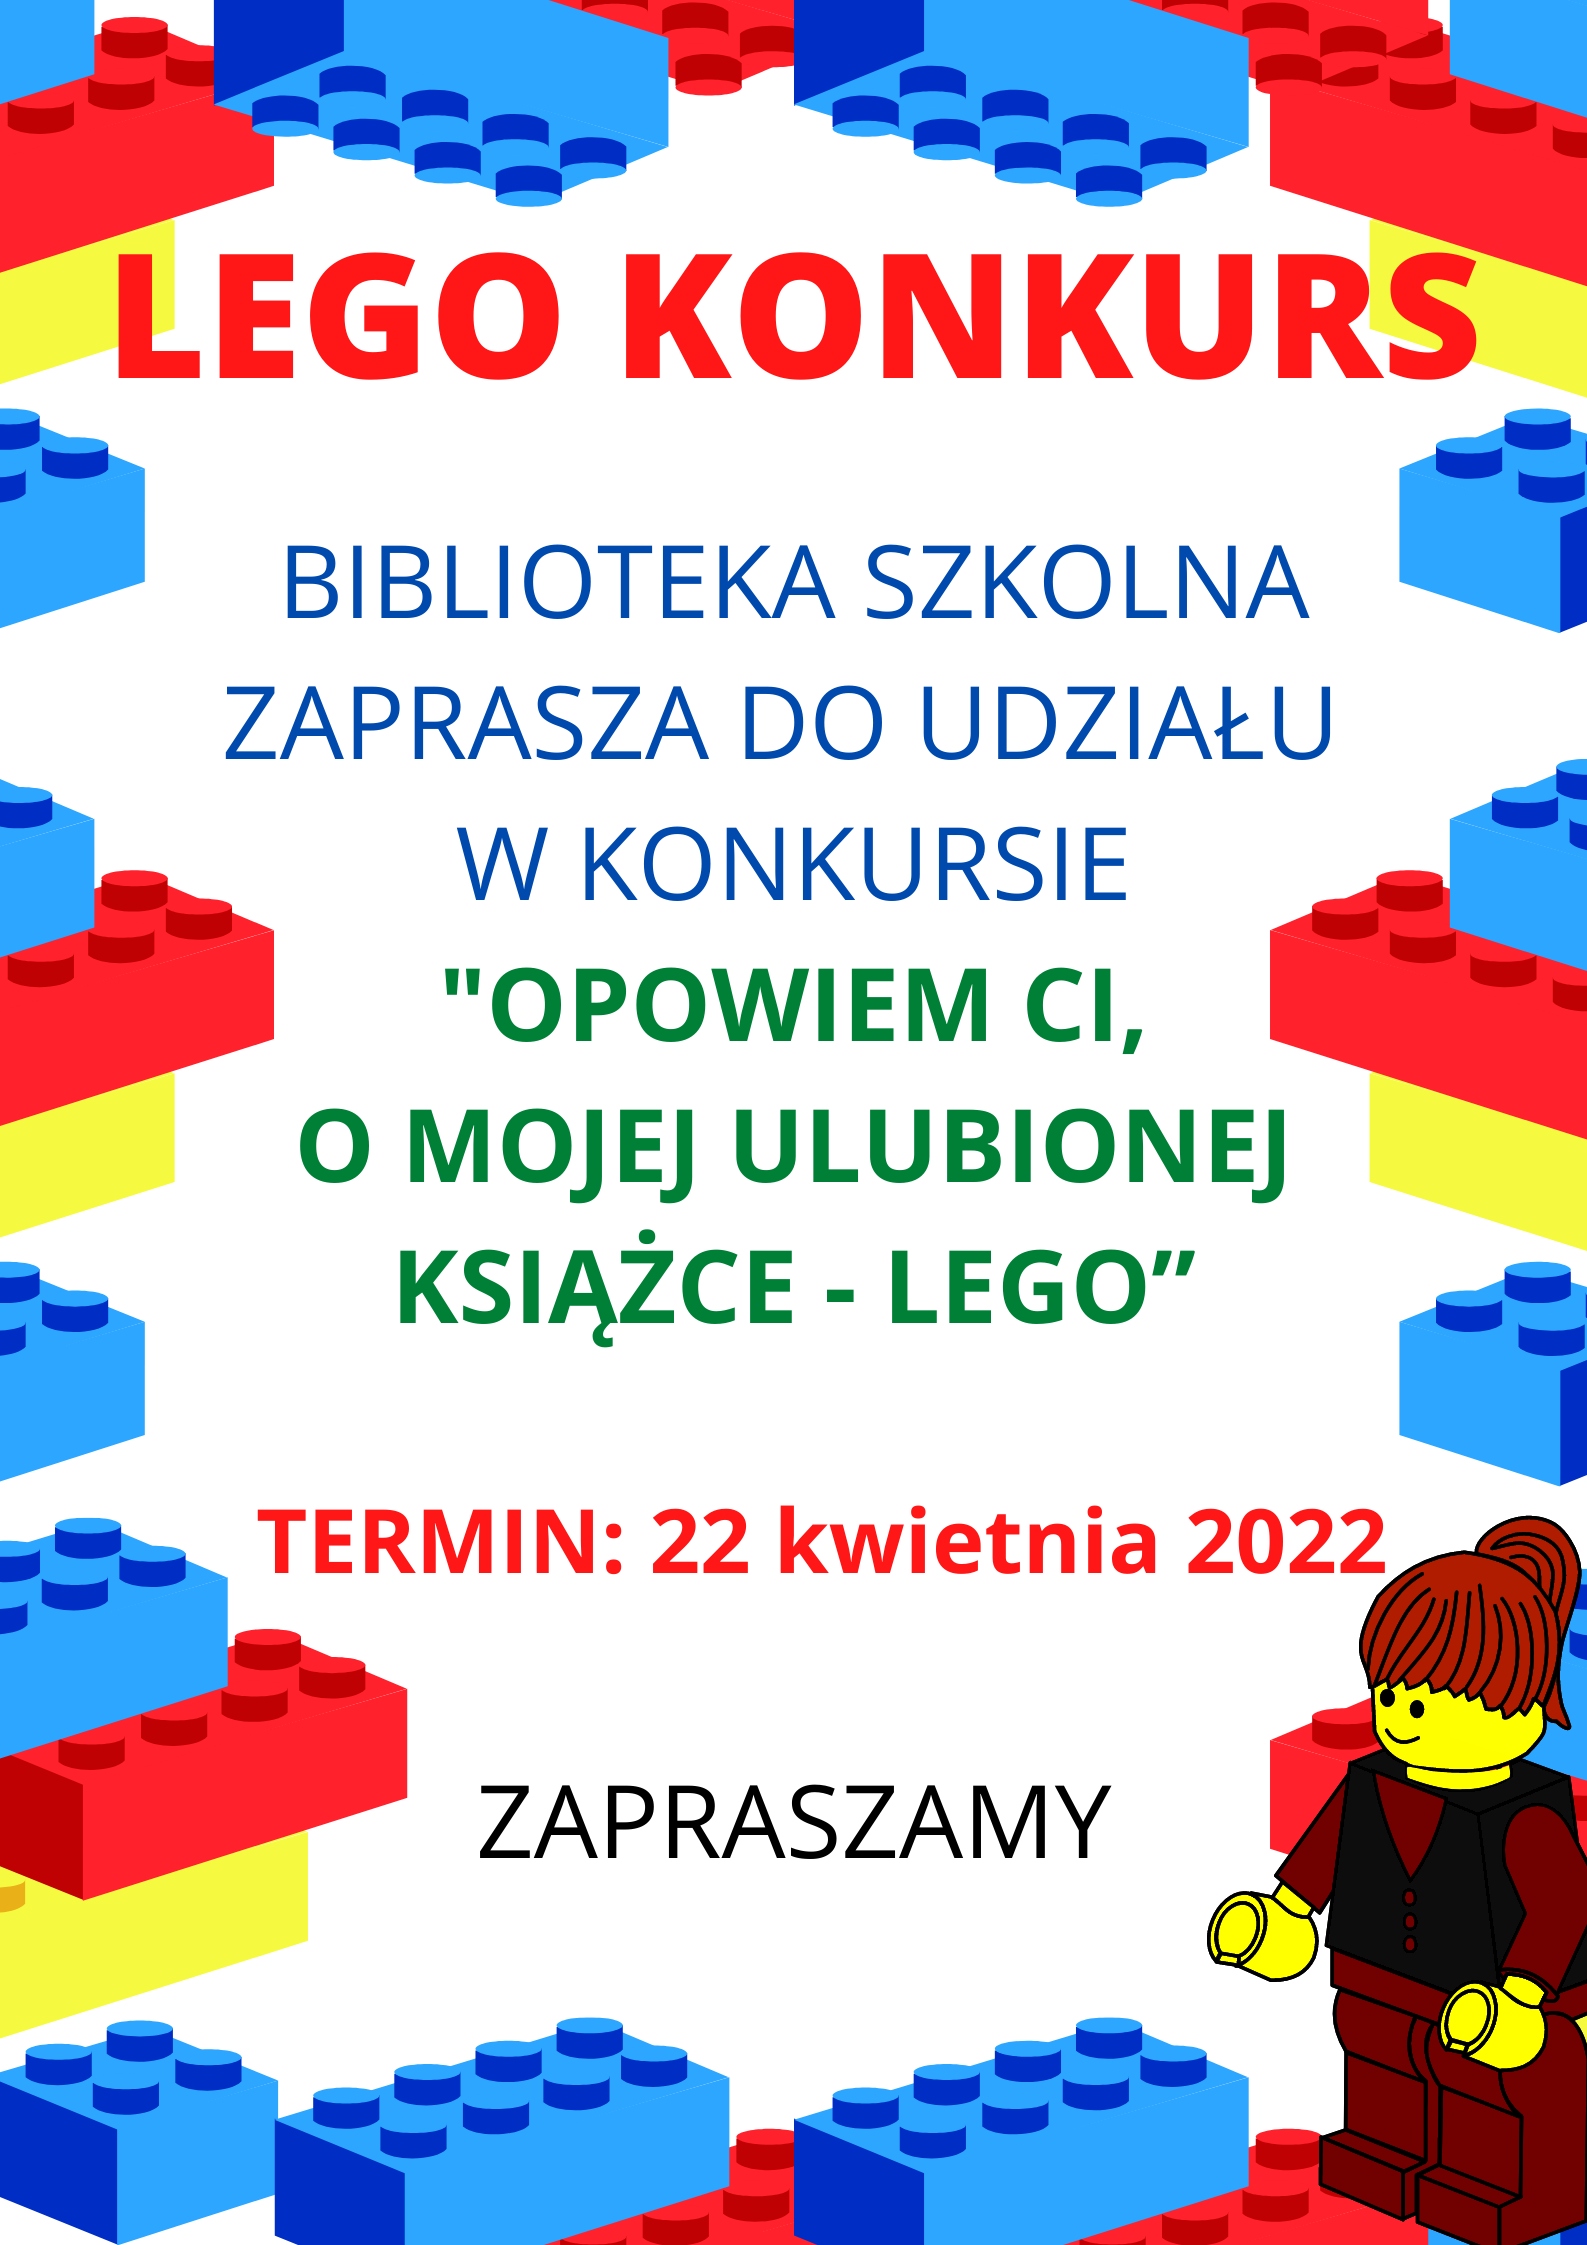 LEGO KONKURS 1